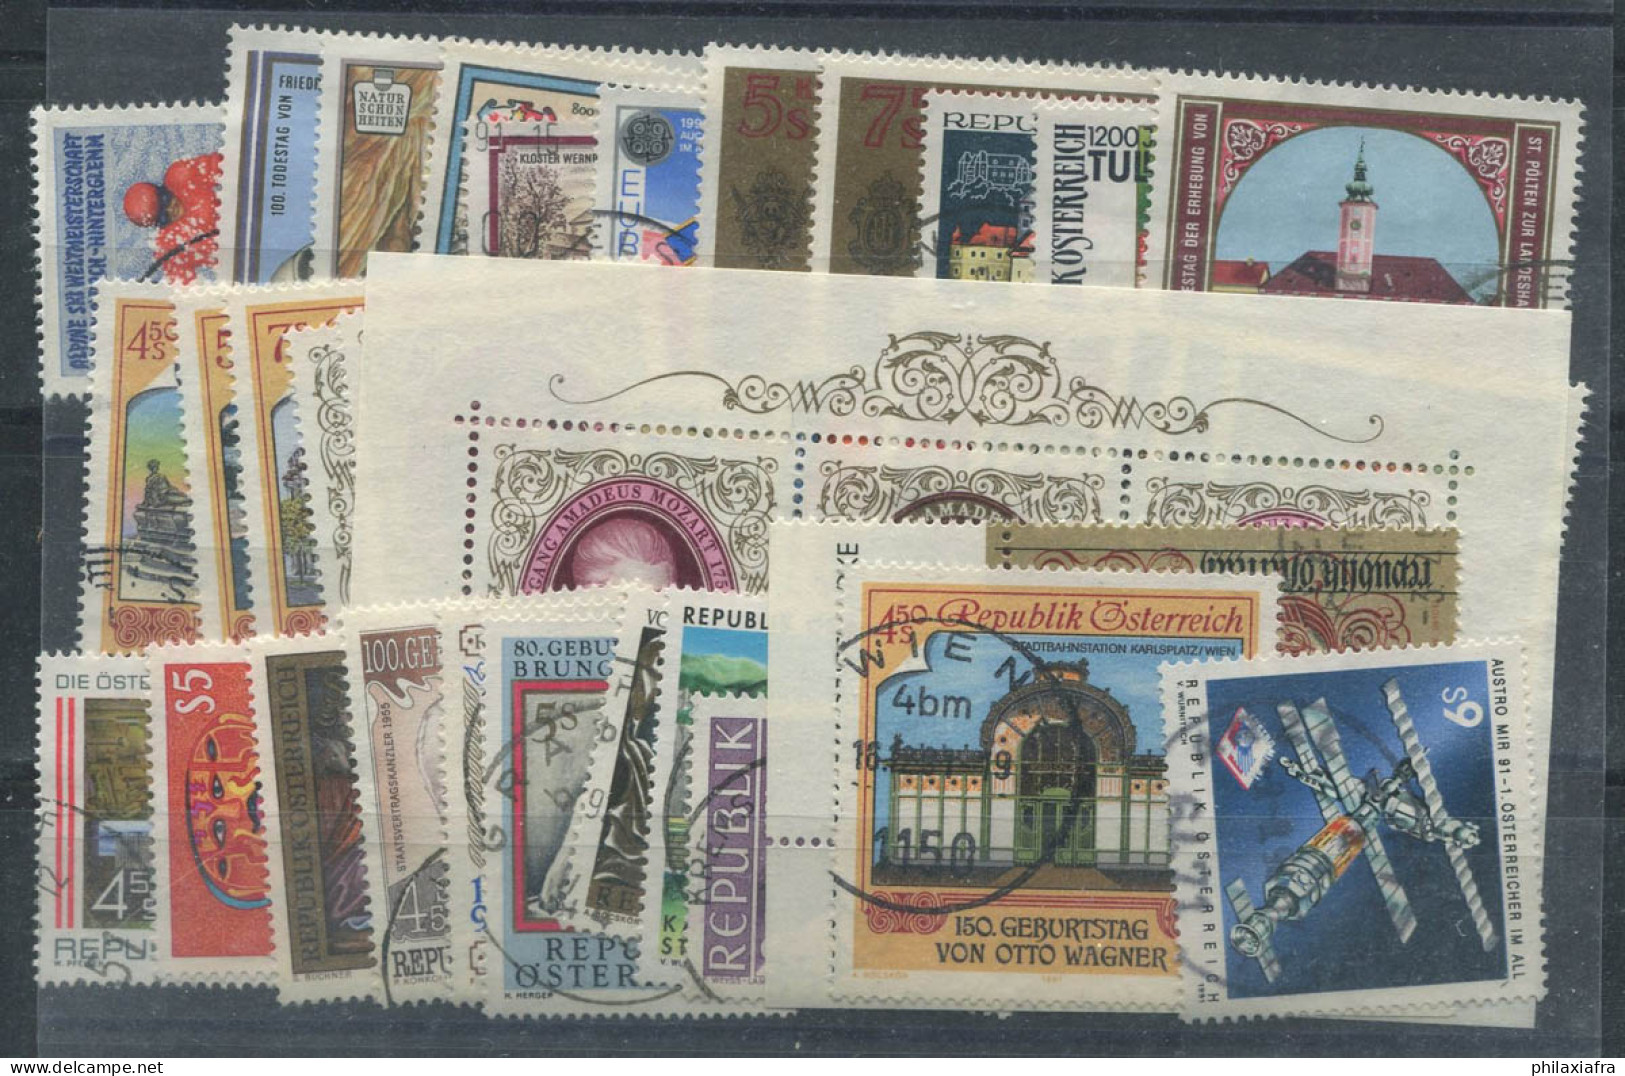 Autriche 1991 Mi. 2013-2047 Oblitéré 100% Année Complète Culture, Art - Used Stamps